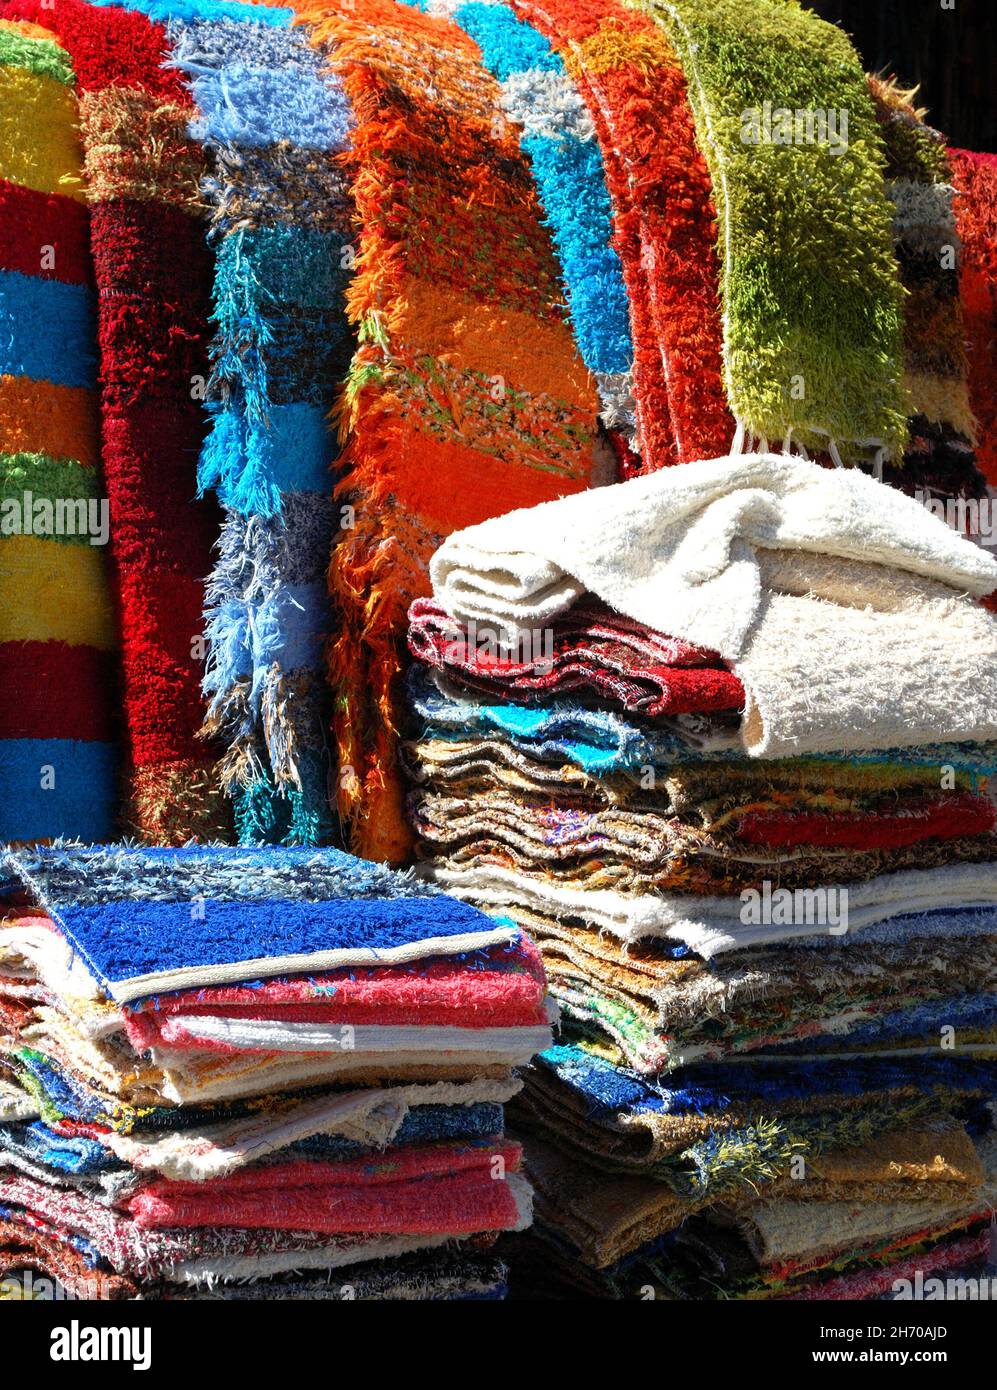 Lokal hergestellte Teppiche zum Verkauf in einem traditionellen weißen  Dorf, Pampaneira, Las Alpujarras, Provinz Granada, Andalusien, Spanien  Stockfotografie - Alamy